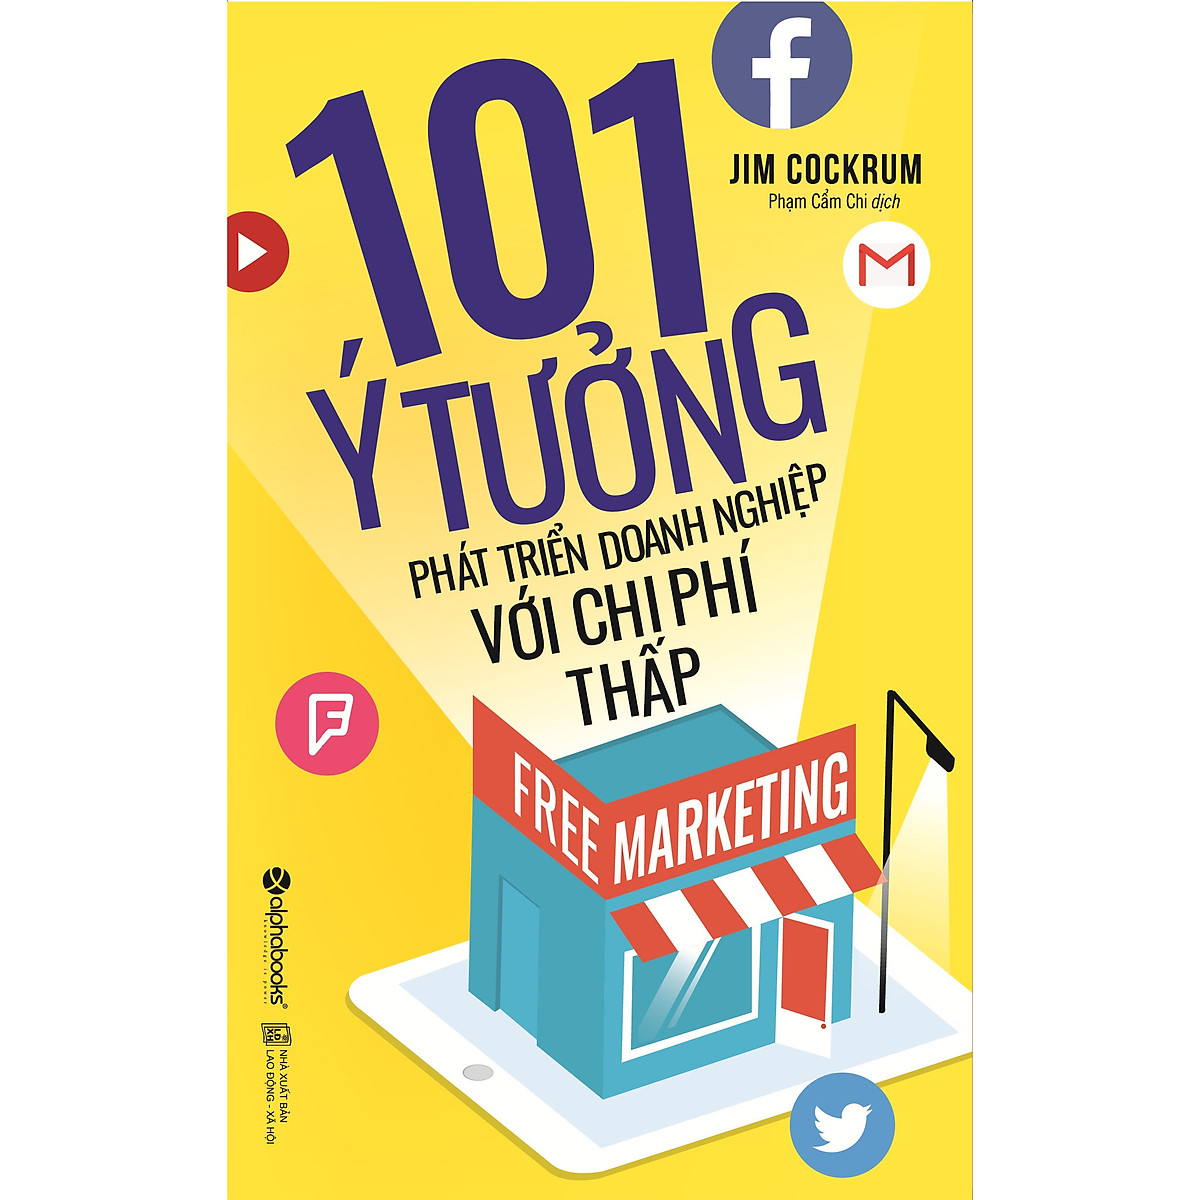 Free Marketing  –  101 Ý Tưởng Phát Triển Doanh Nghiệp Với Chi Phí Thấp (Tái Bản 2017)